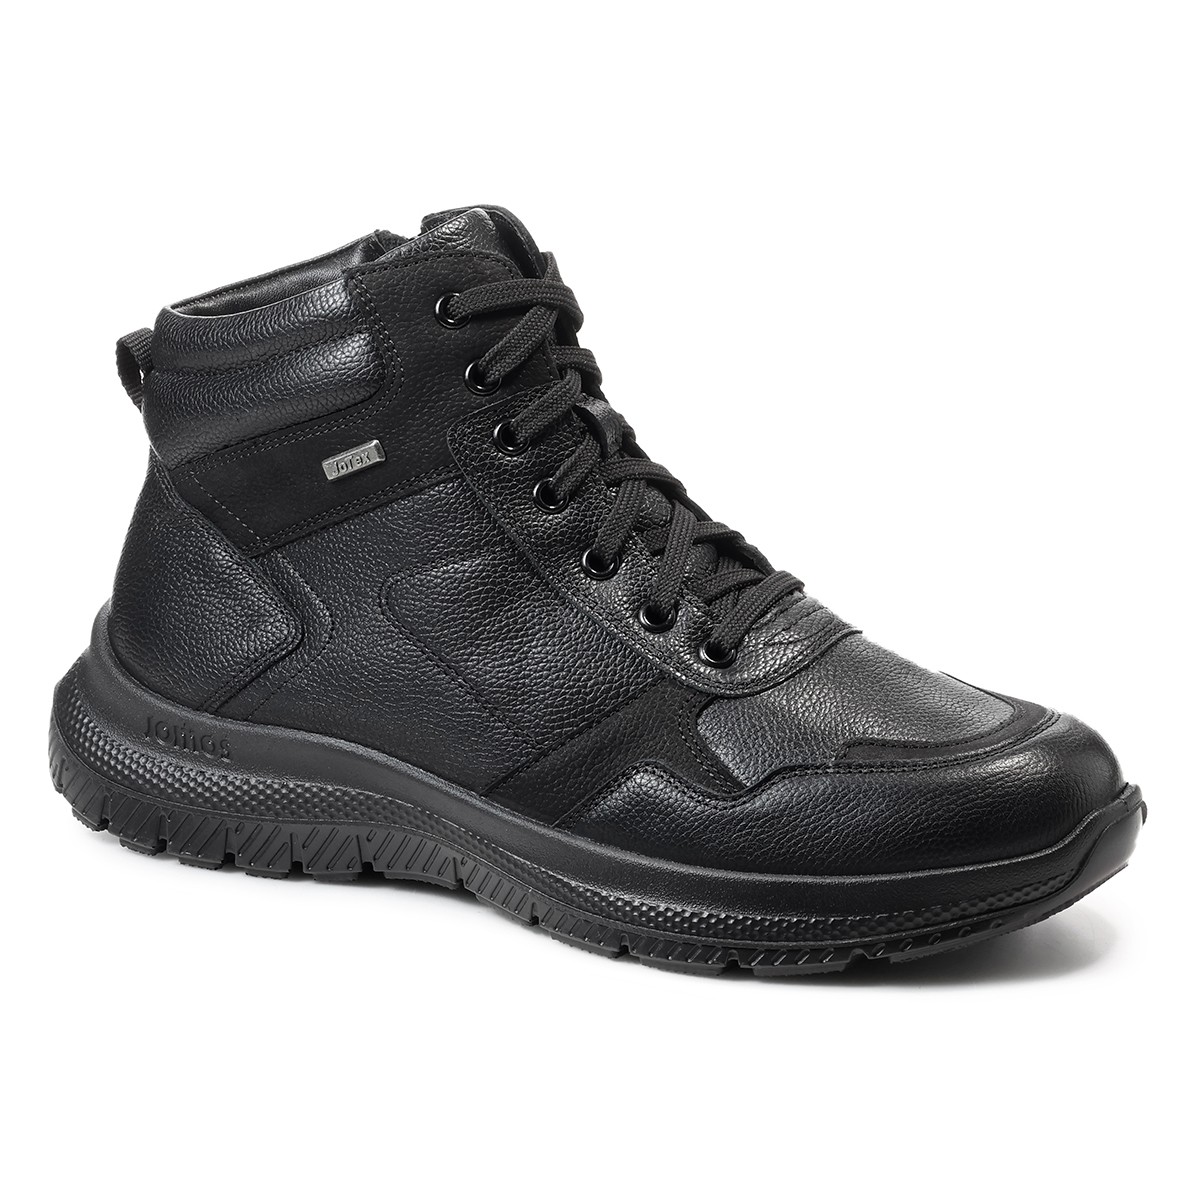 Мужские ботинки Confidence, Jomos, черные мужские треккинговые ботинки trekking jomos черные